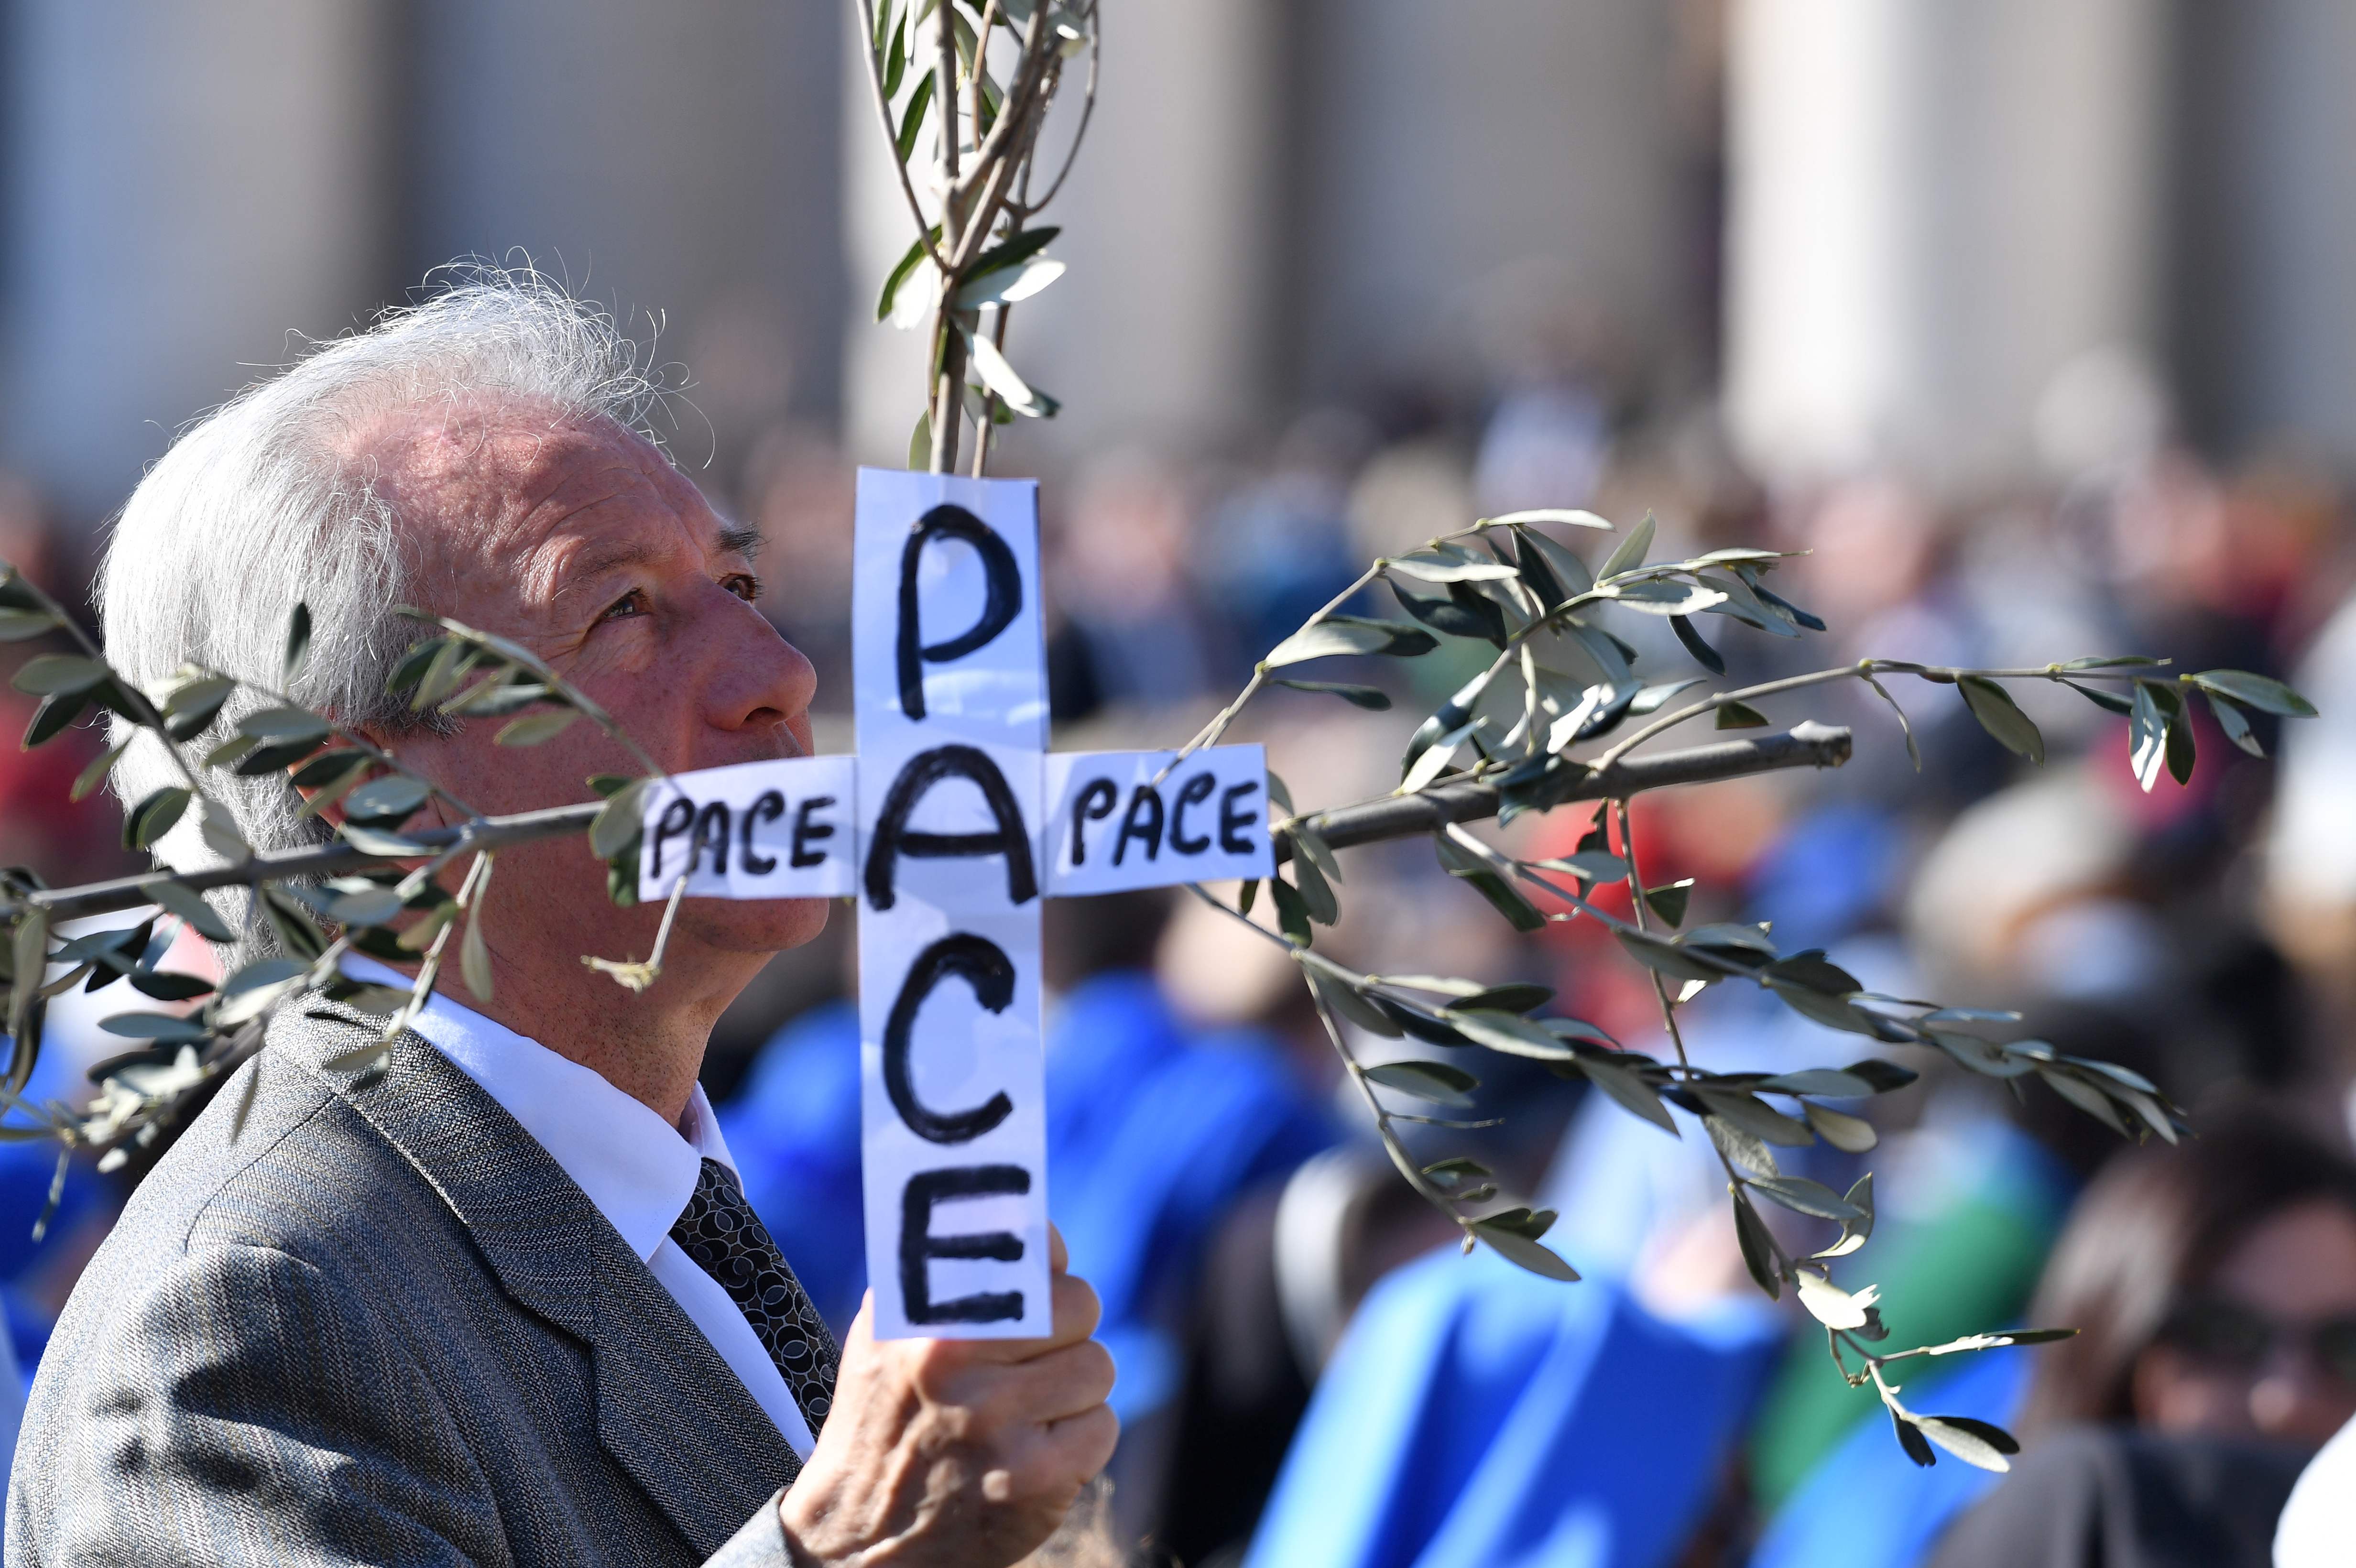 مواطن يحمل لافتات النخل تحمل عنوان السلام